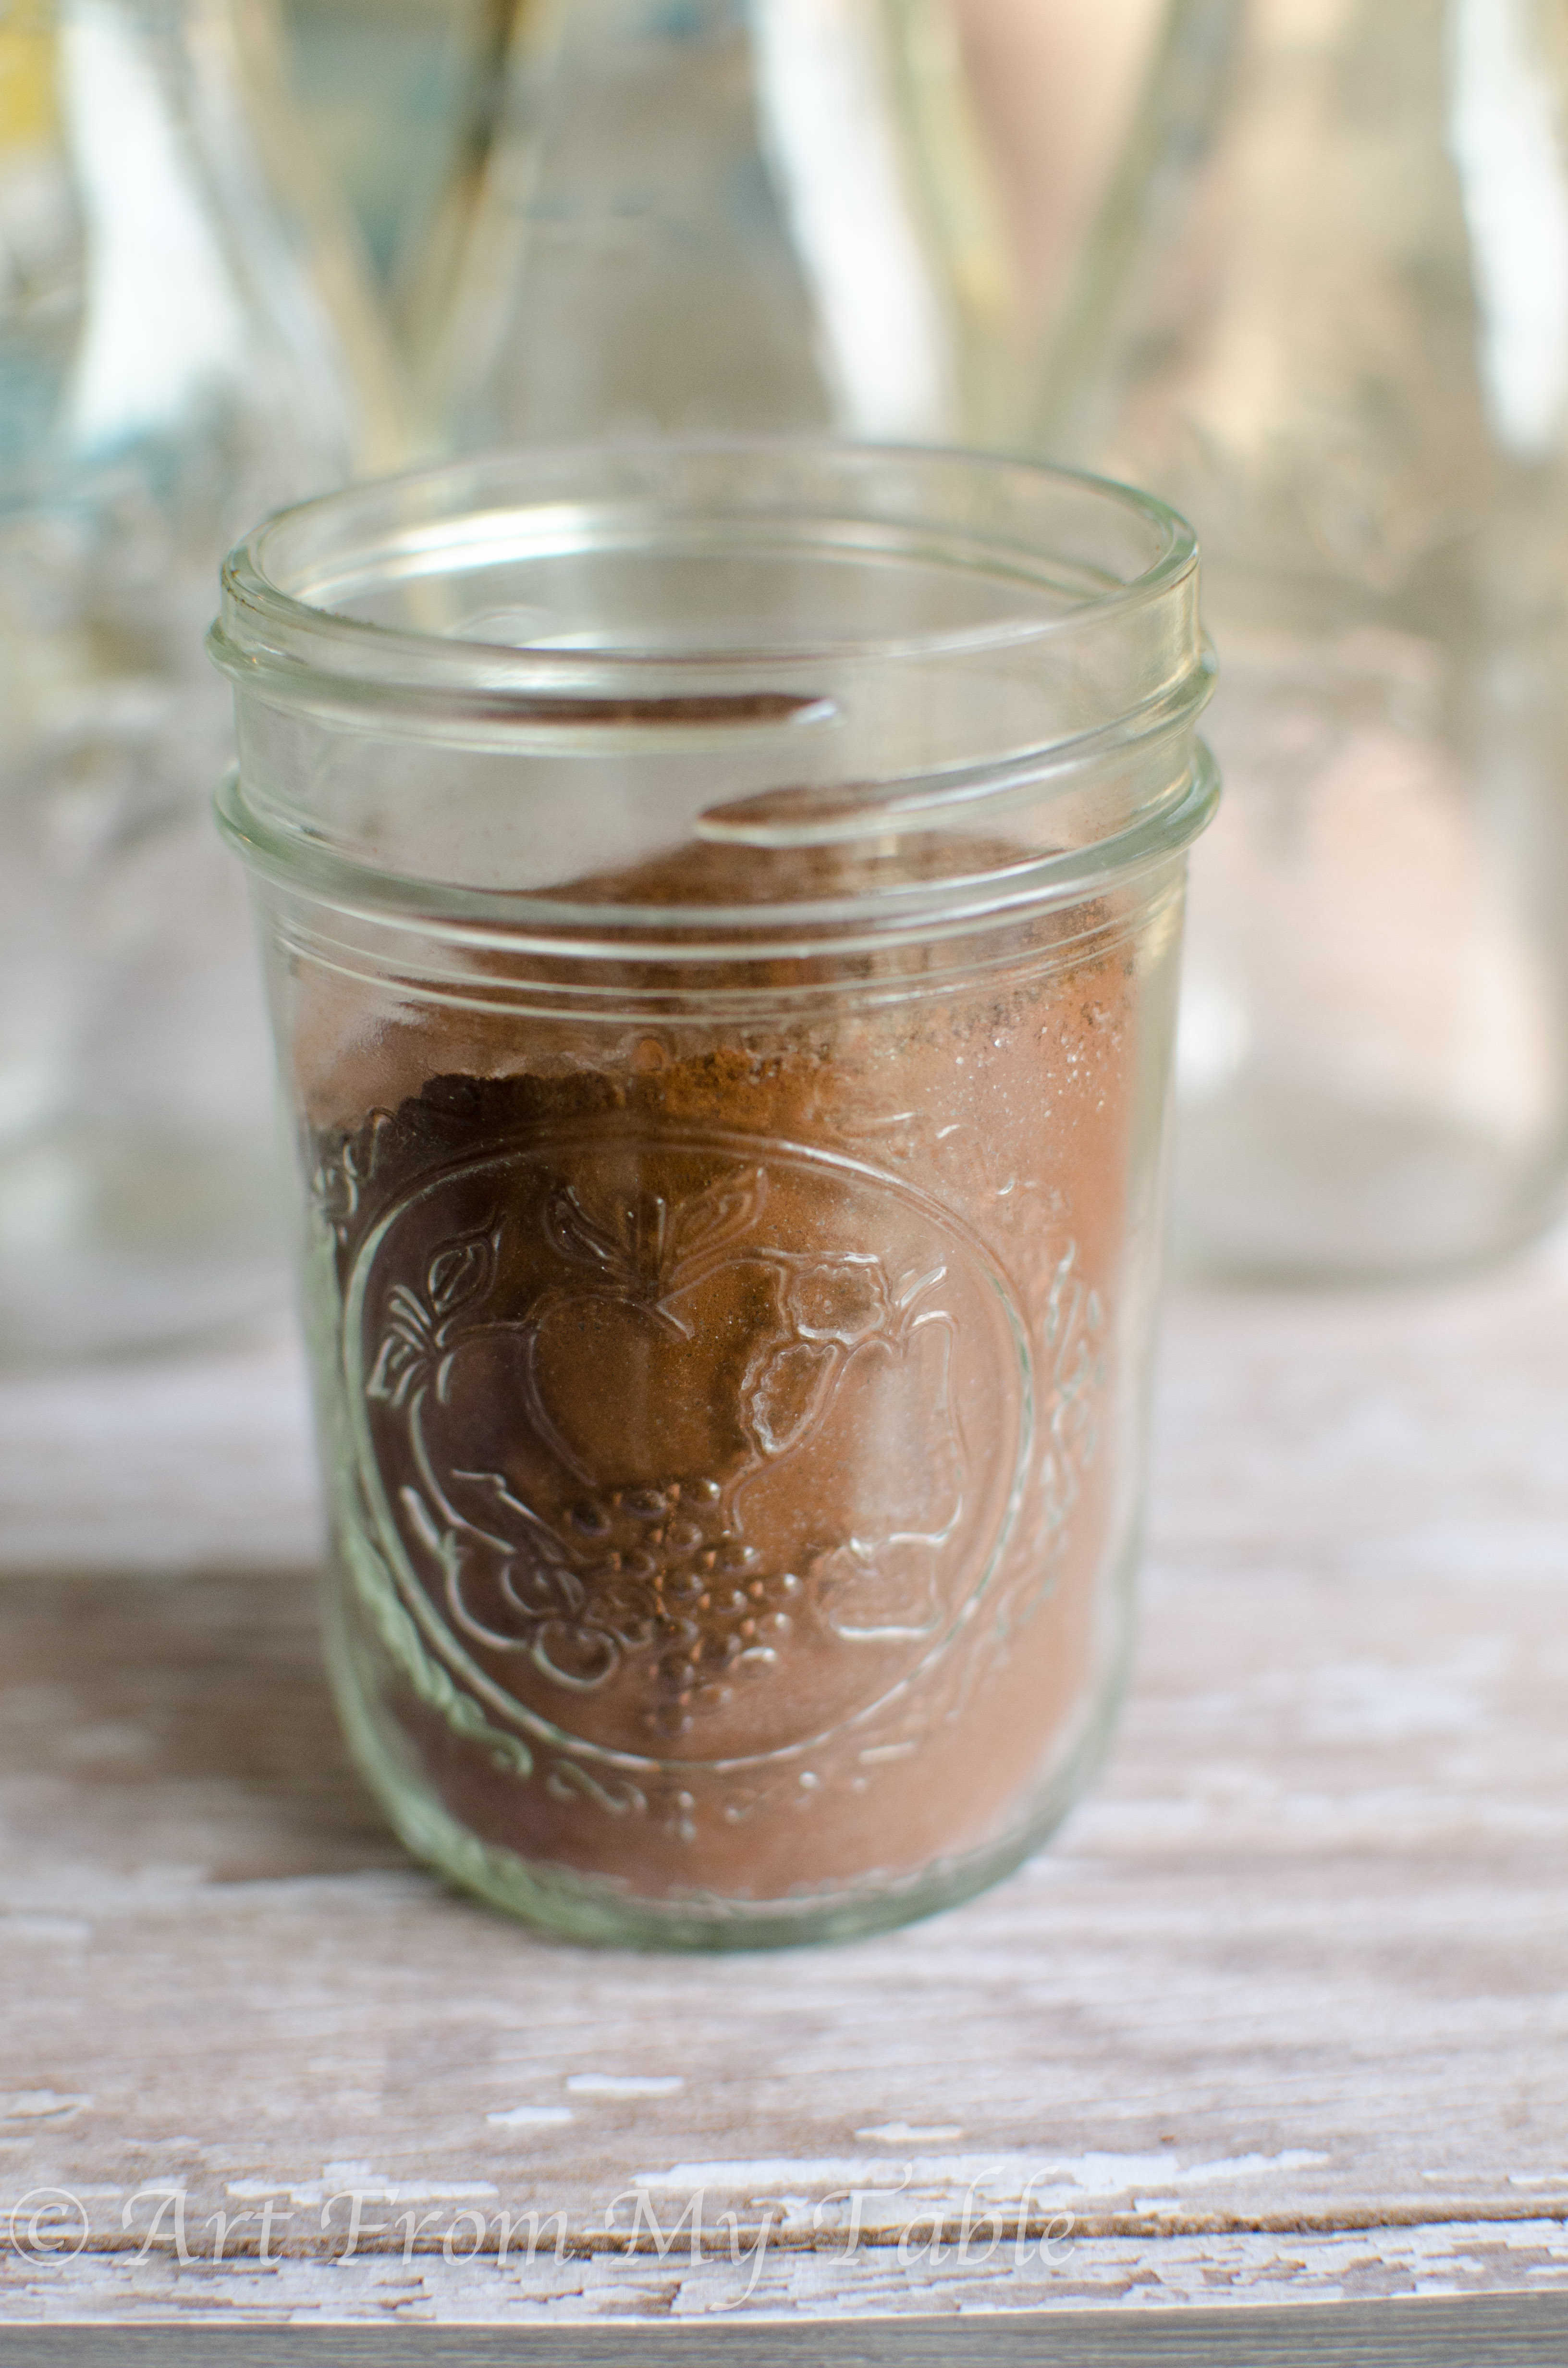 Jar with chocolate milk mix inside.